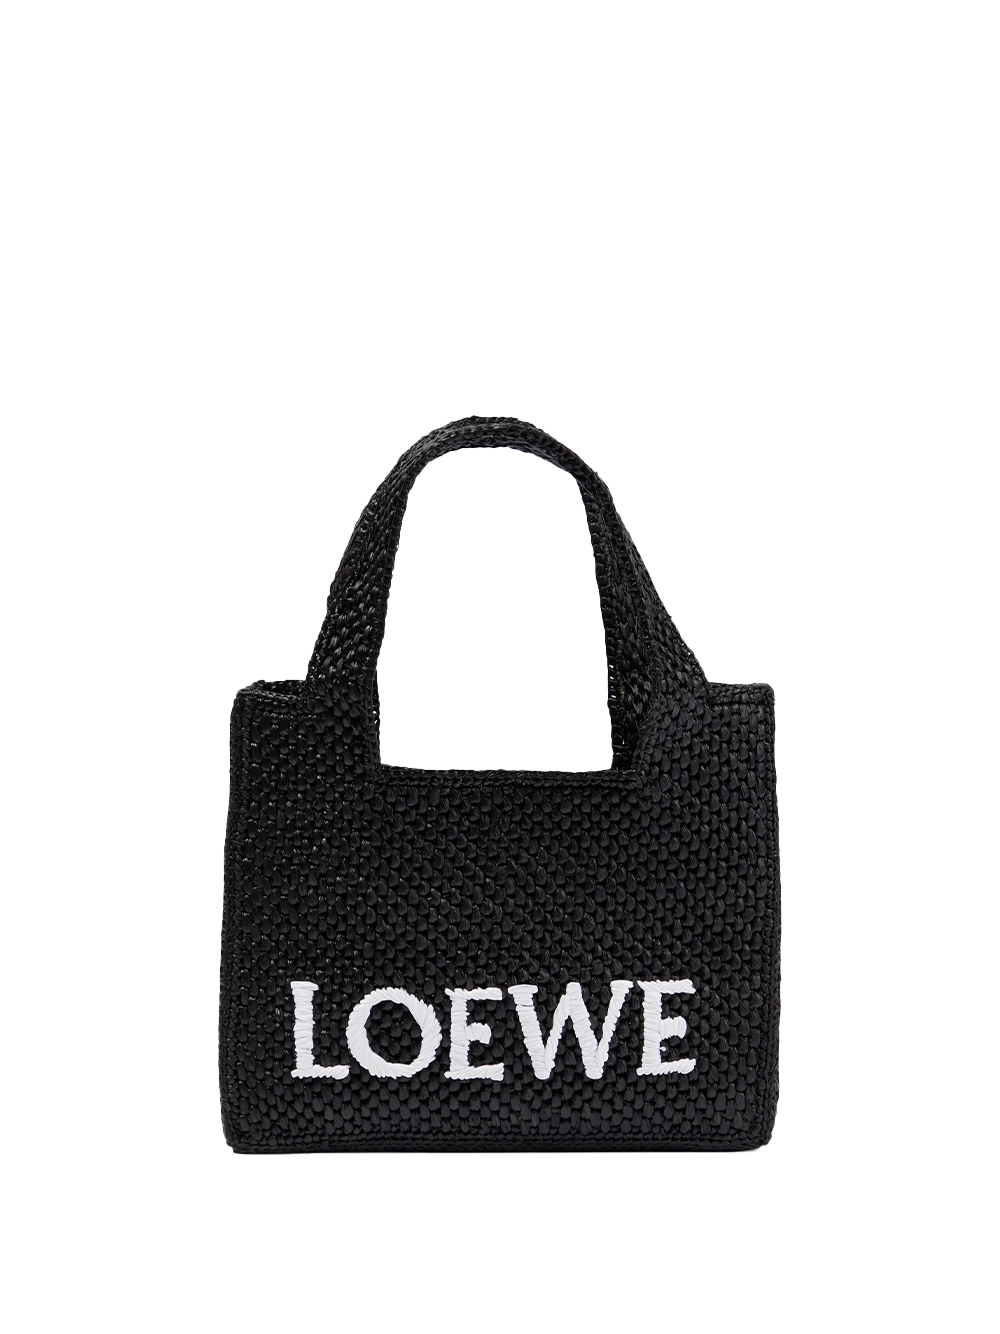 Loewe Paula's Ibiza LOEWE PAULA'S IBIZA- Loewe Font Raffia Mini Tote Bag